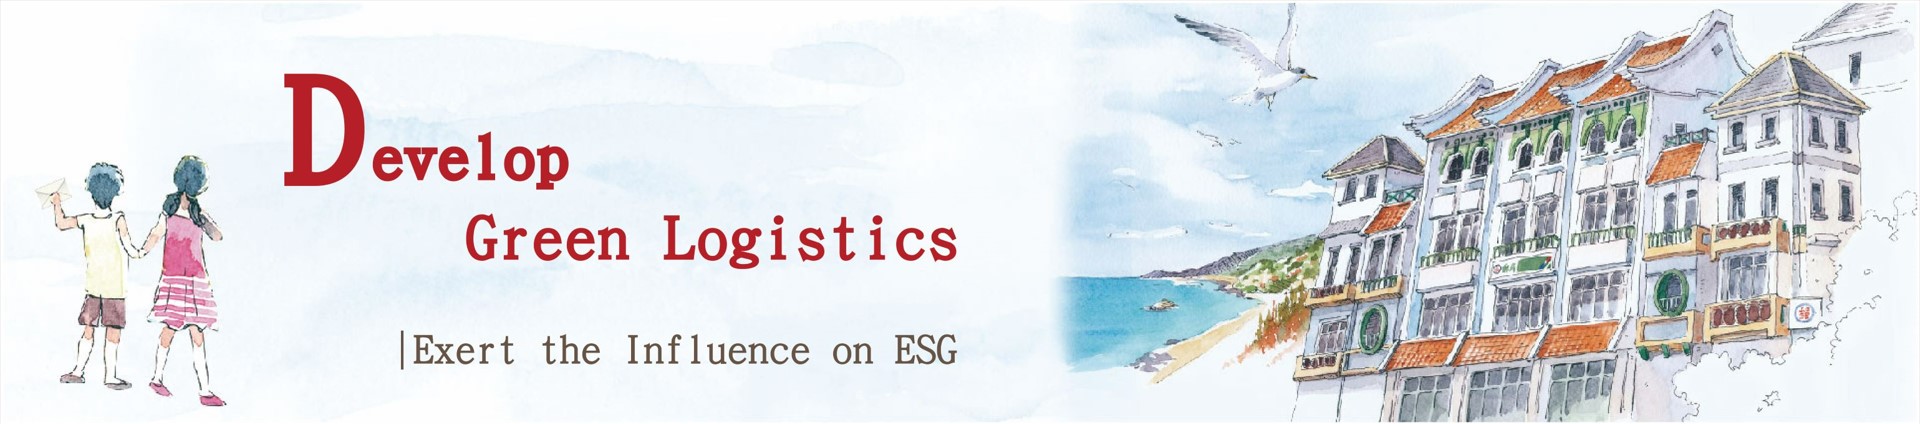 Develop Green Logistics - Exert the Influence on ESG